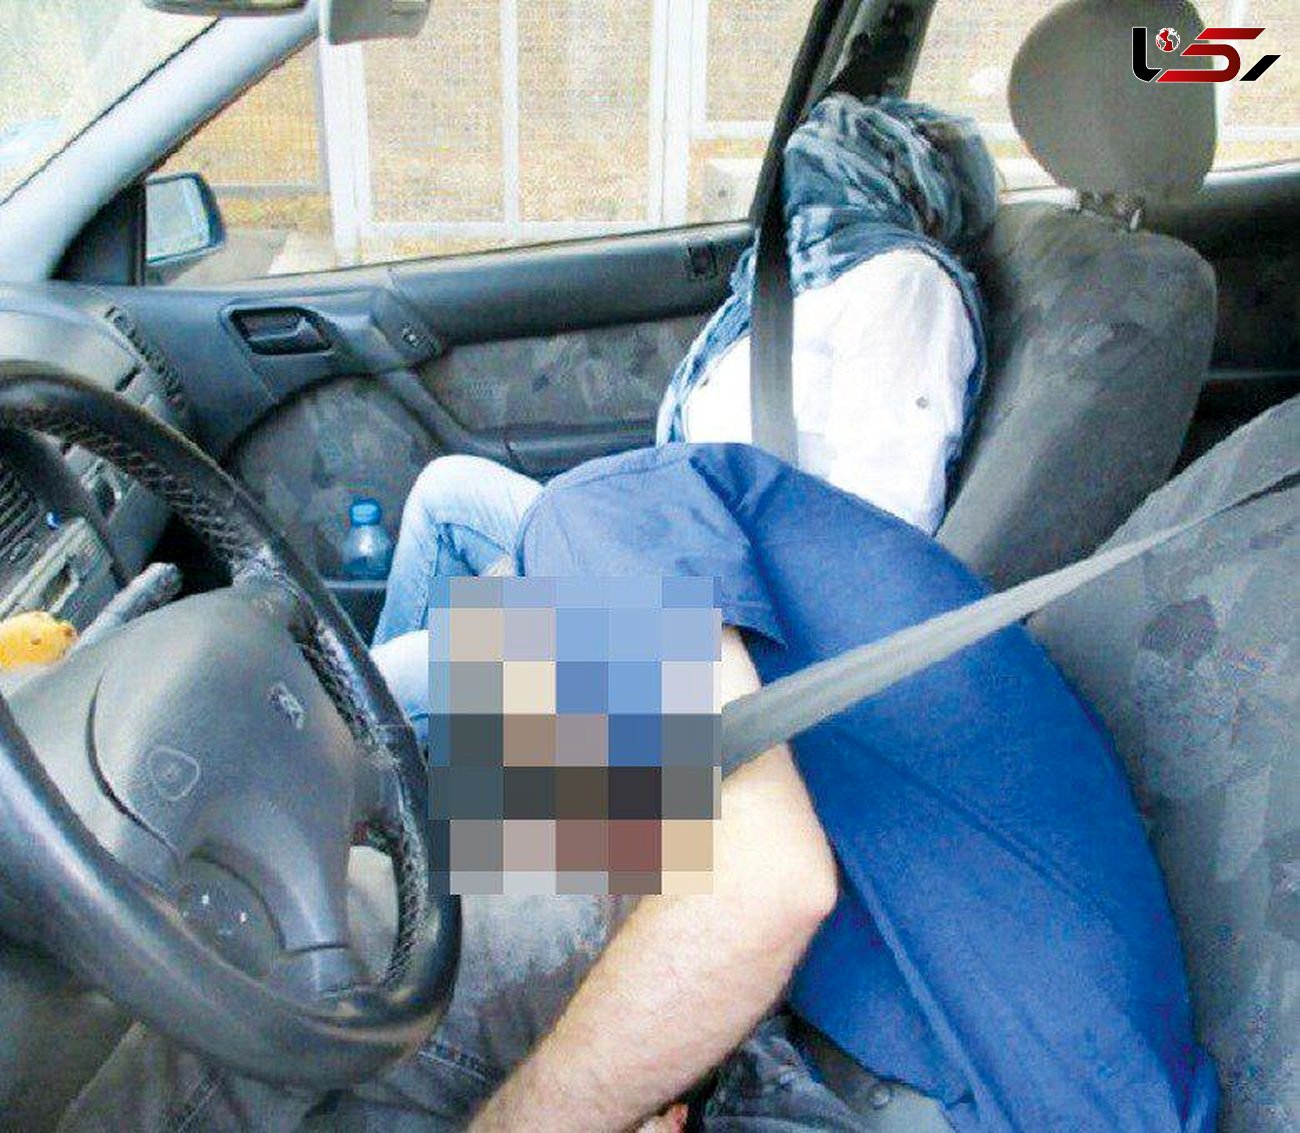 عکس وحشتناک از جنازه های یک زن و مرد تهرانی! / آنها در داخل خودرو کشته شدند + جزییات